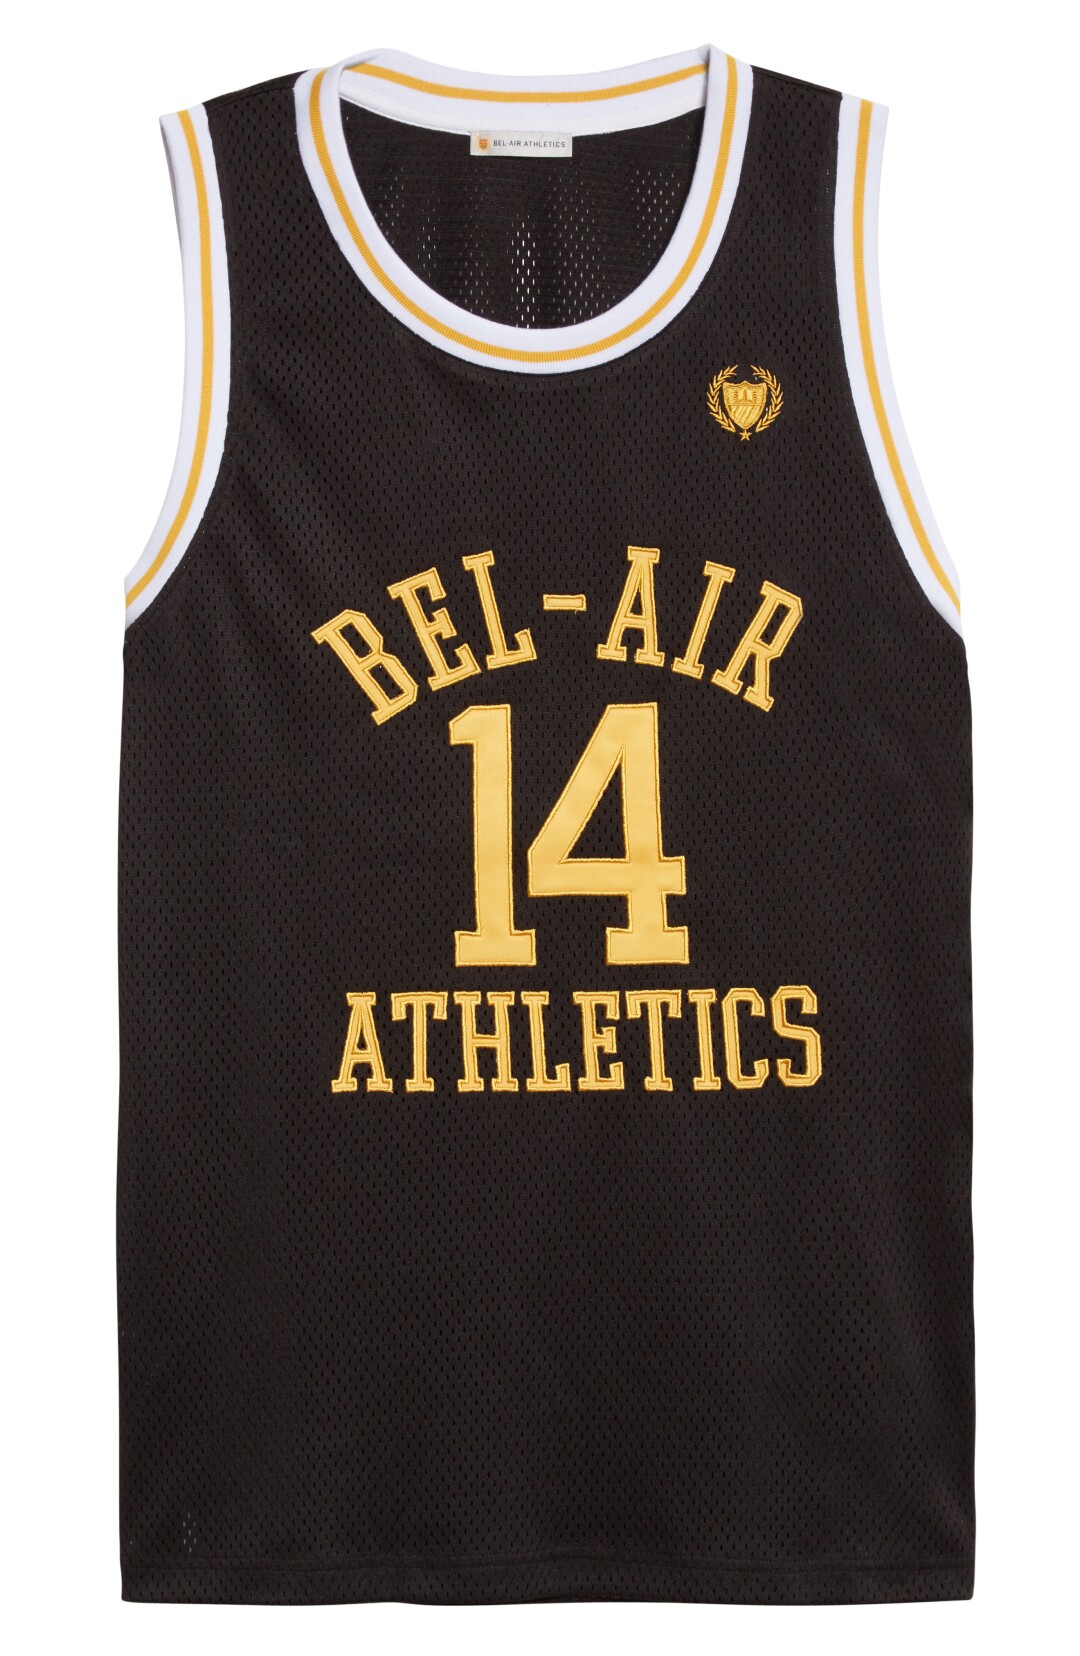 Μαύρη φανέλα Bel-Air Athletics με κίτρινη γραφή